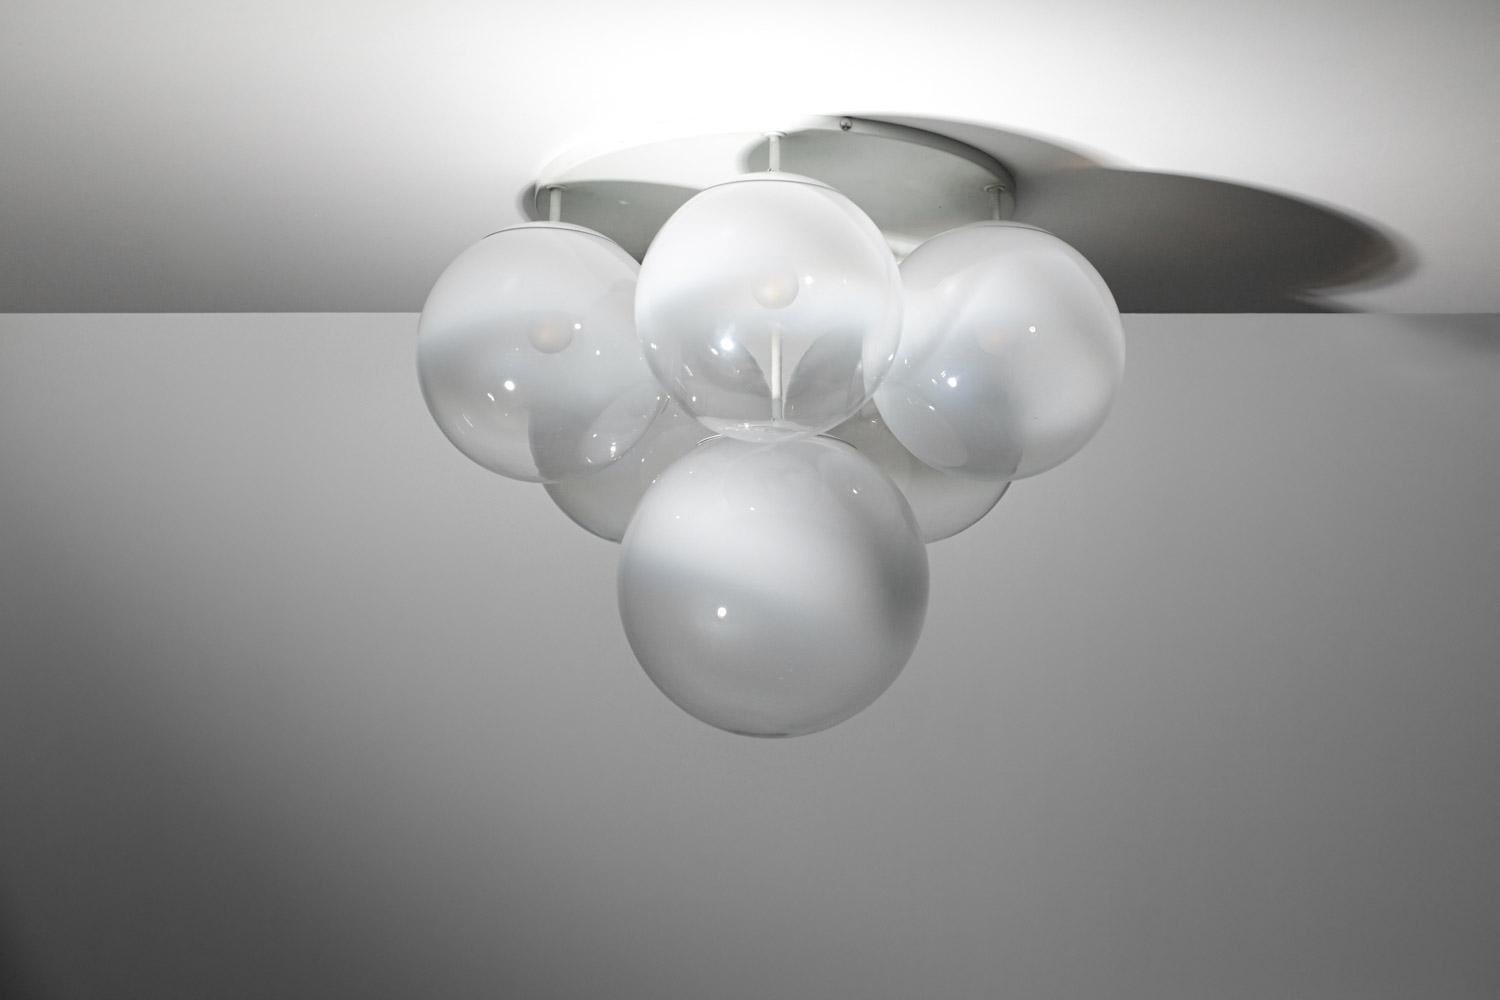 Pair of 70's Italian ceiling lights in Murano glass Gino Sarfatti style - G723 - 11